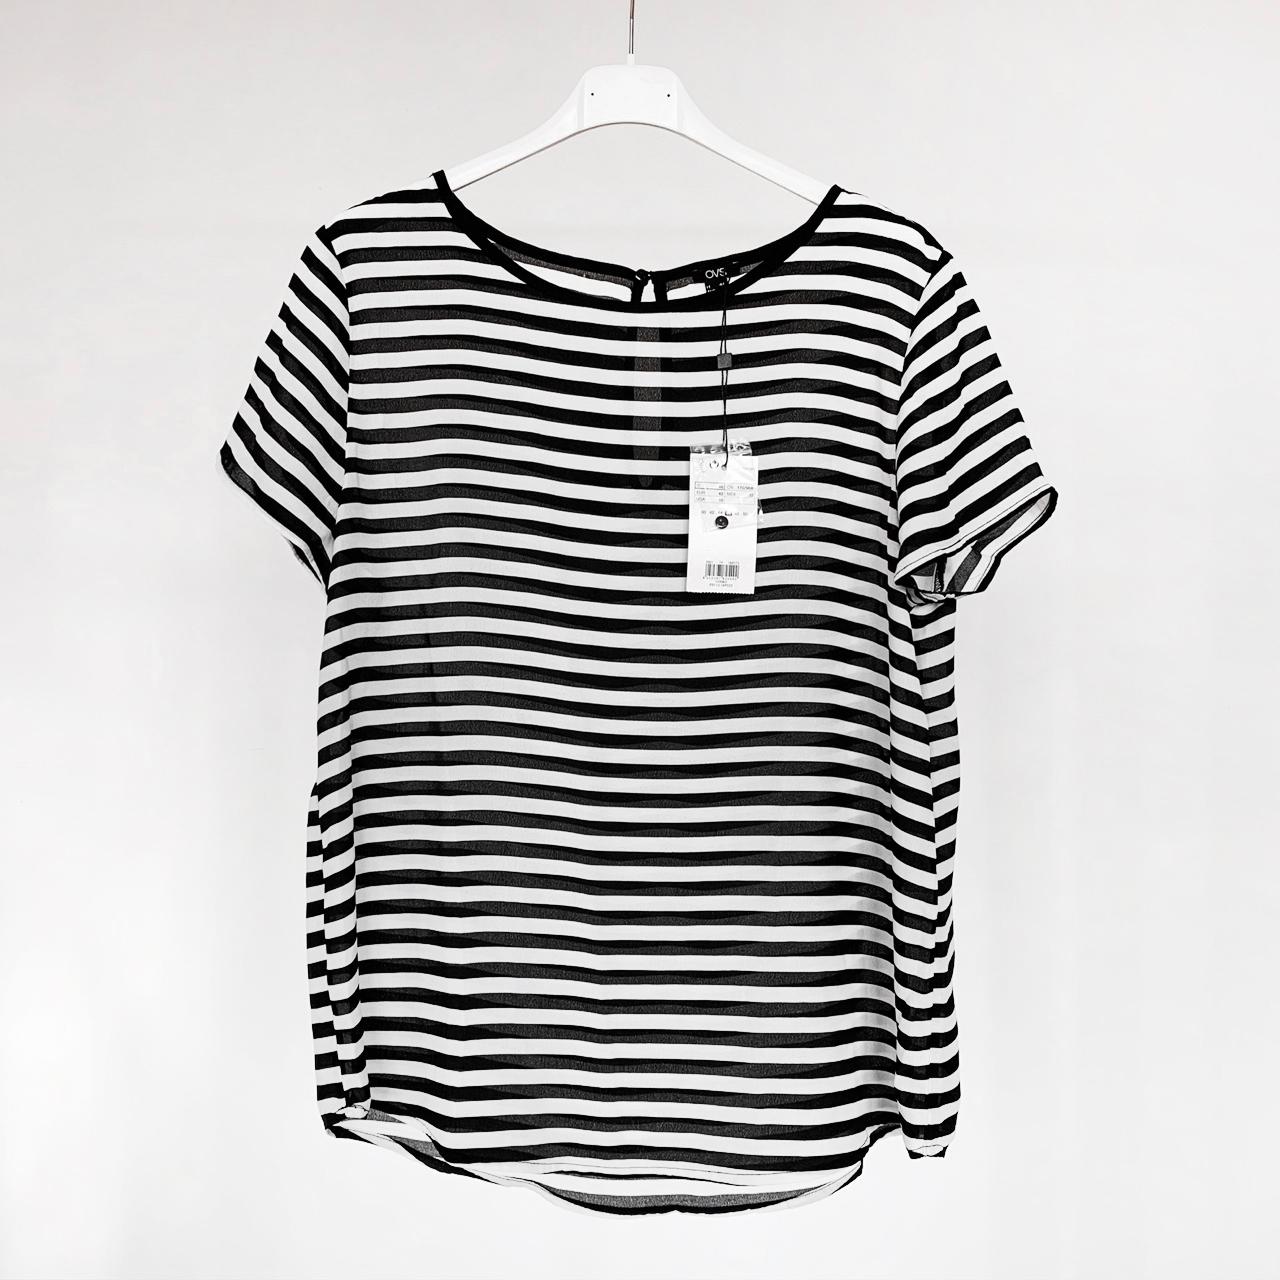 Product Image 1 - 💥NUOVA CON CARTELLINO💥
T-shirt basic leggerissima